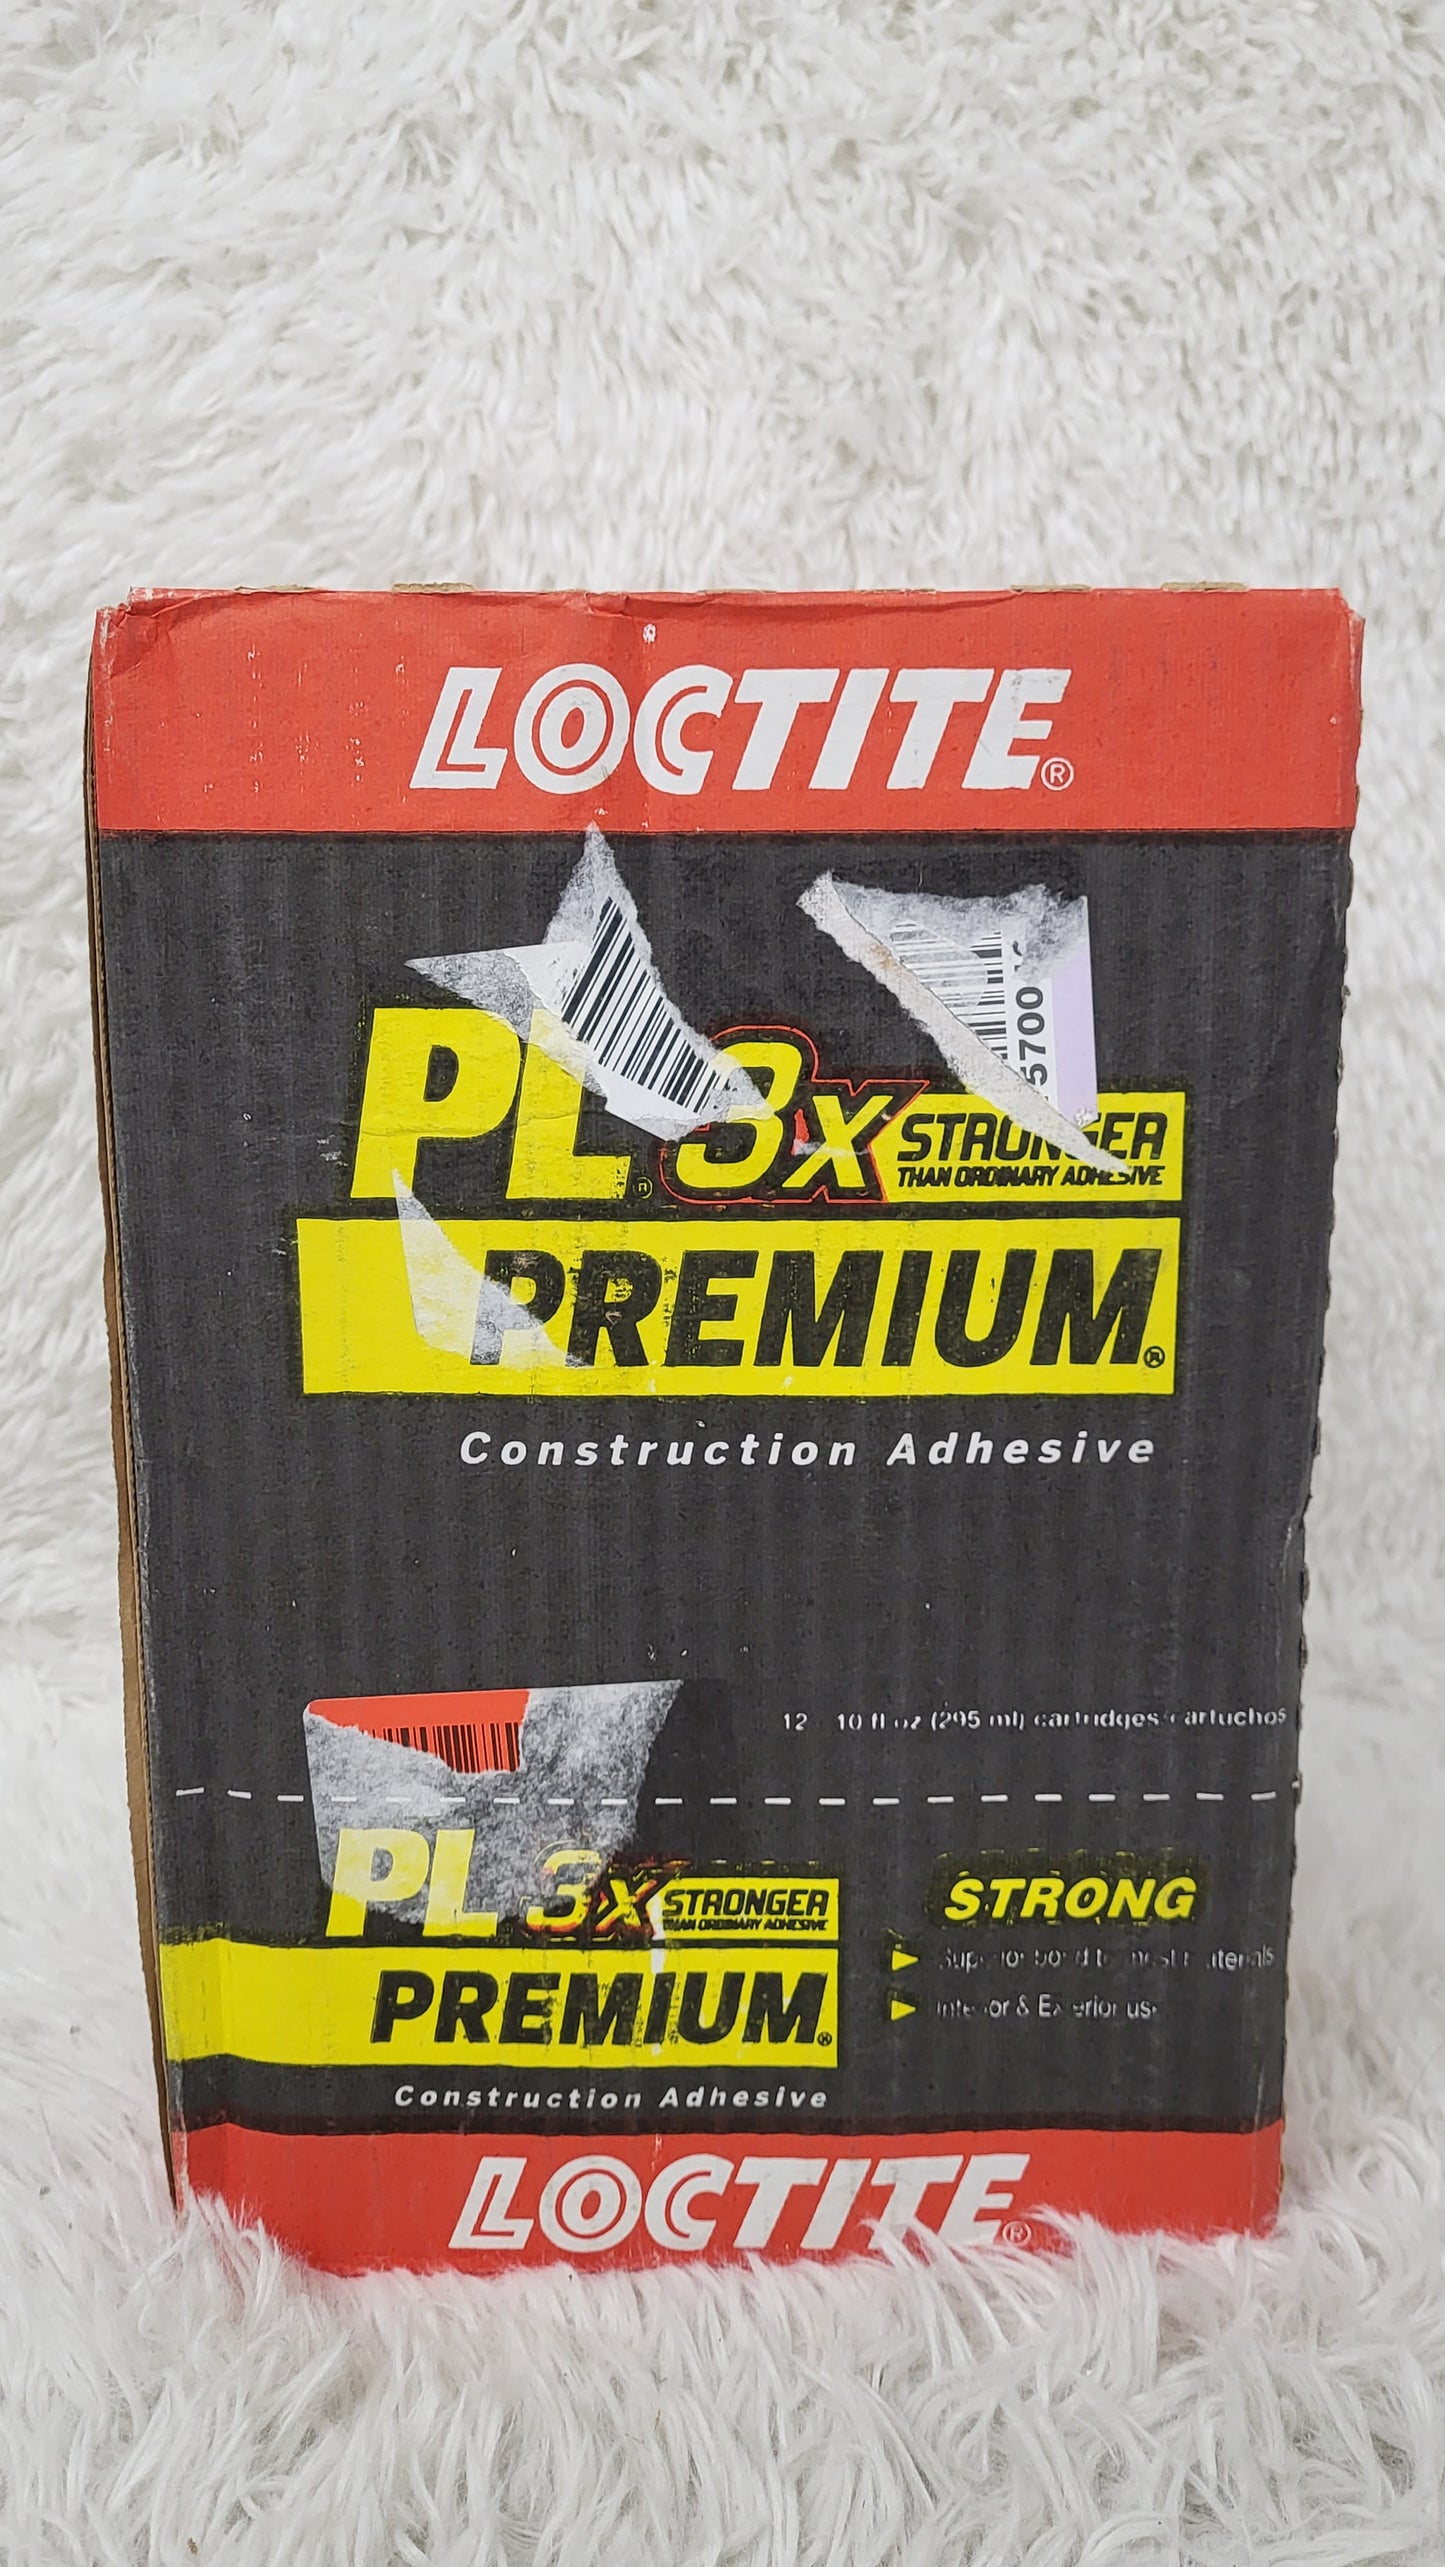 LOCTITE PL Premium 3x 12 件装棕色聚氨酯内部/外部结构